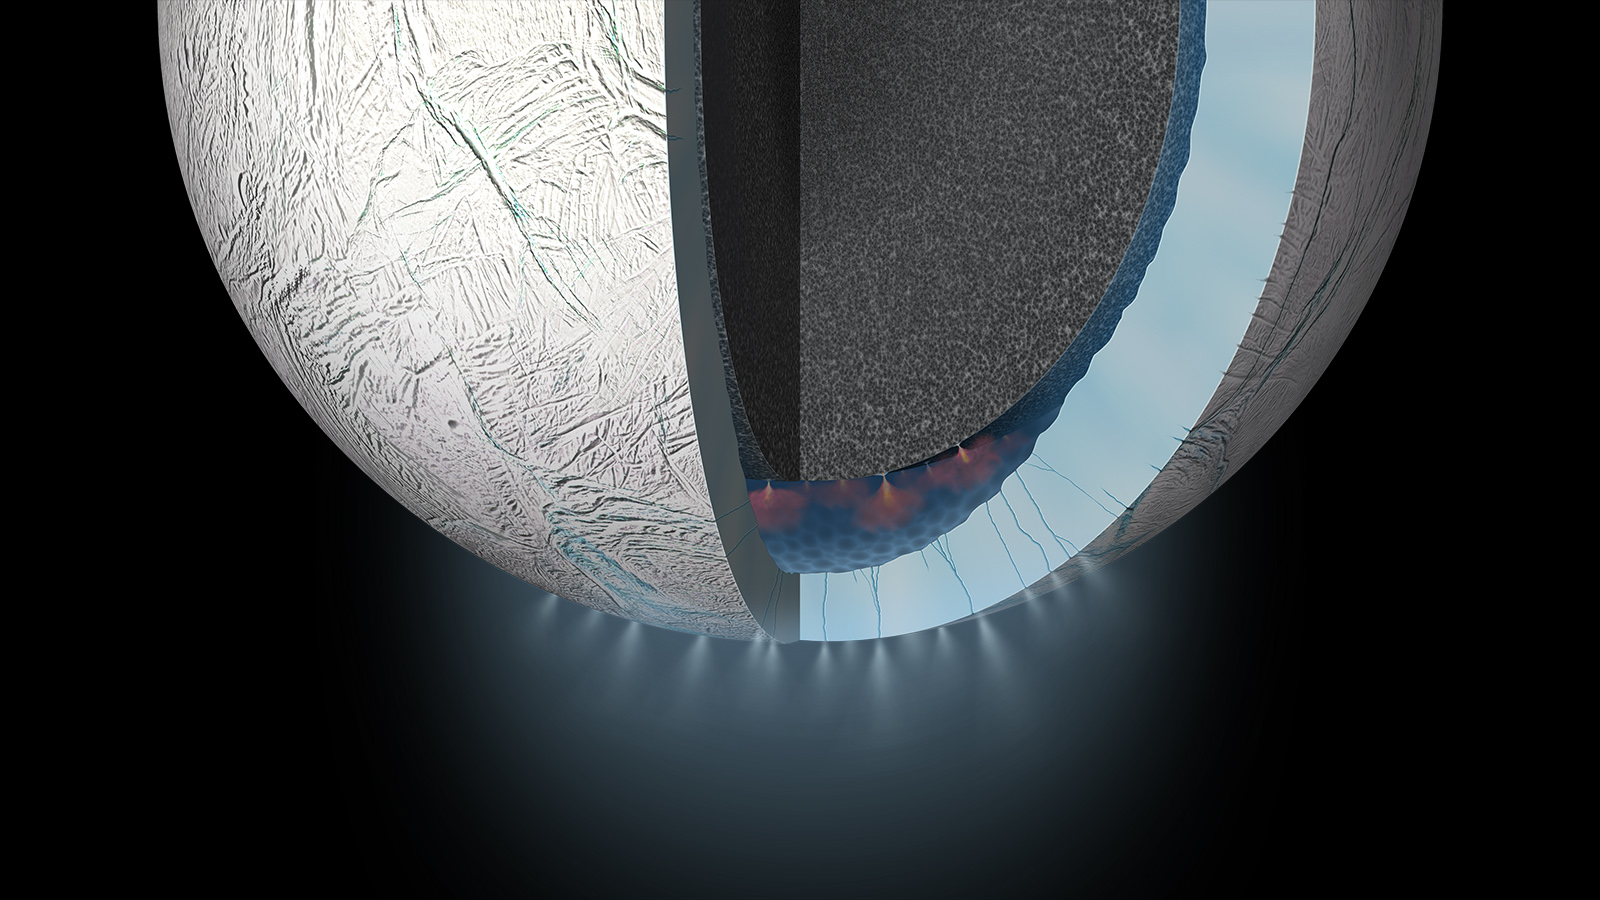 Enceladus Backgrounds, Compatible - PC, Mobile, Gadgets| 1600x900 px